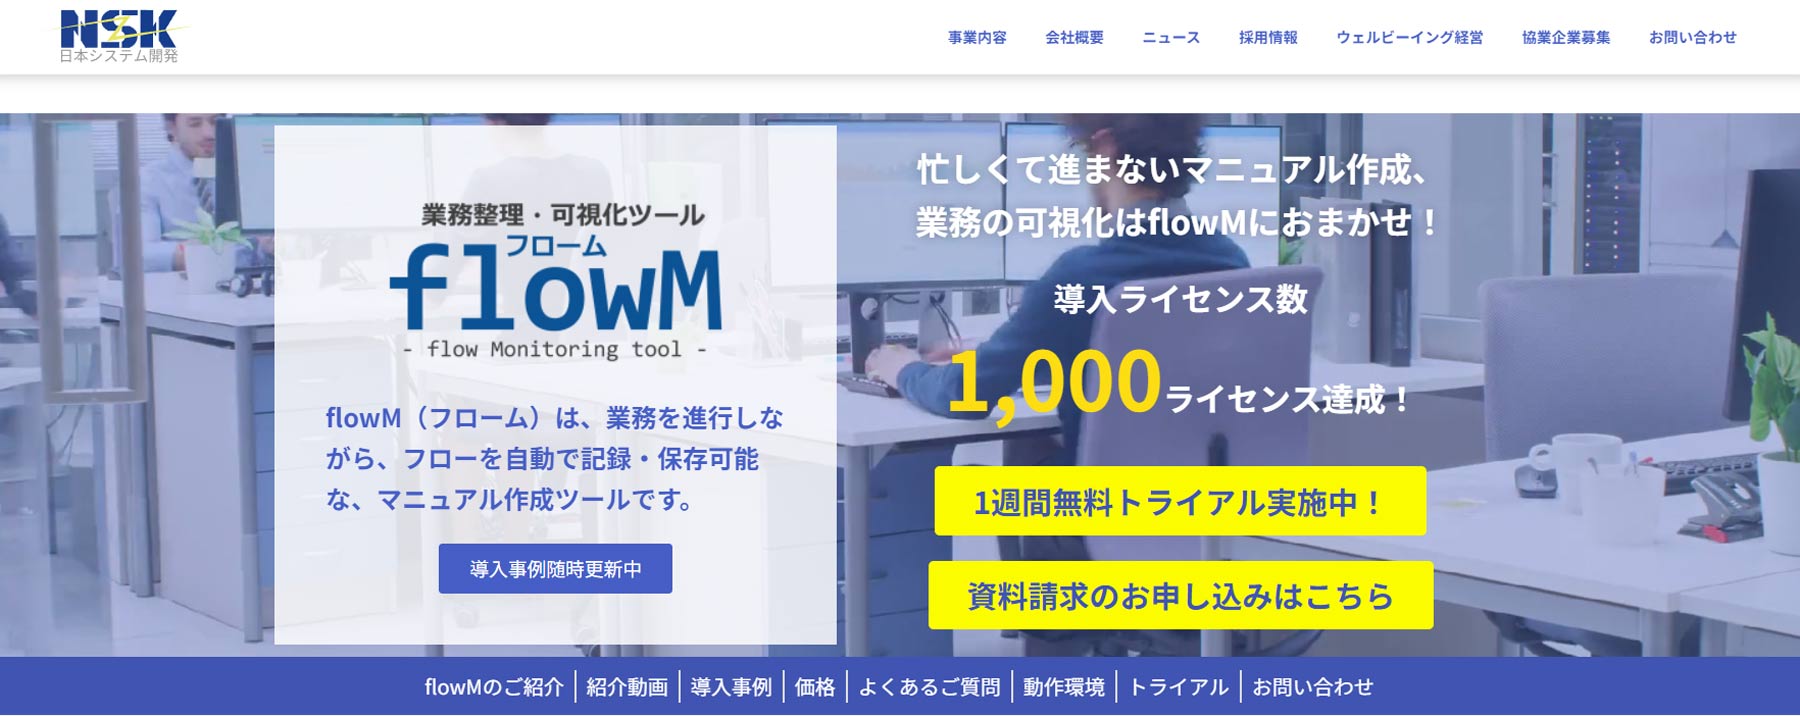 flowM公式Webサイト